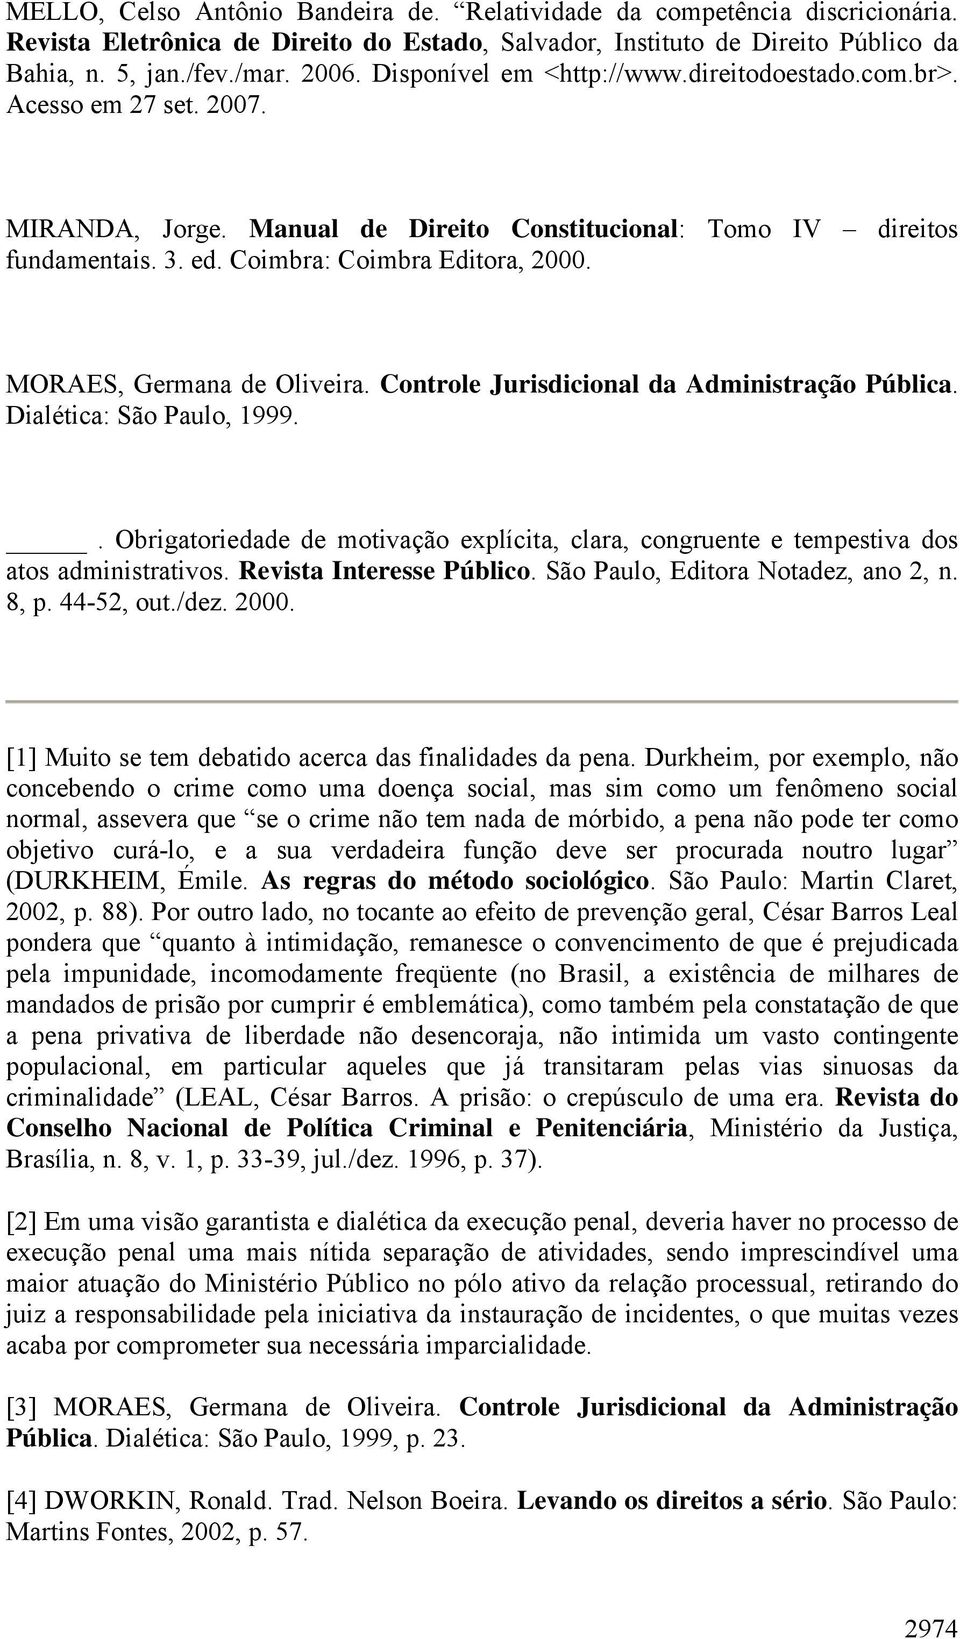 MORAES, Germana de Oliveira. Controle Jurisdicional da Administração Pública. Dialética: São Paulo, 1999.